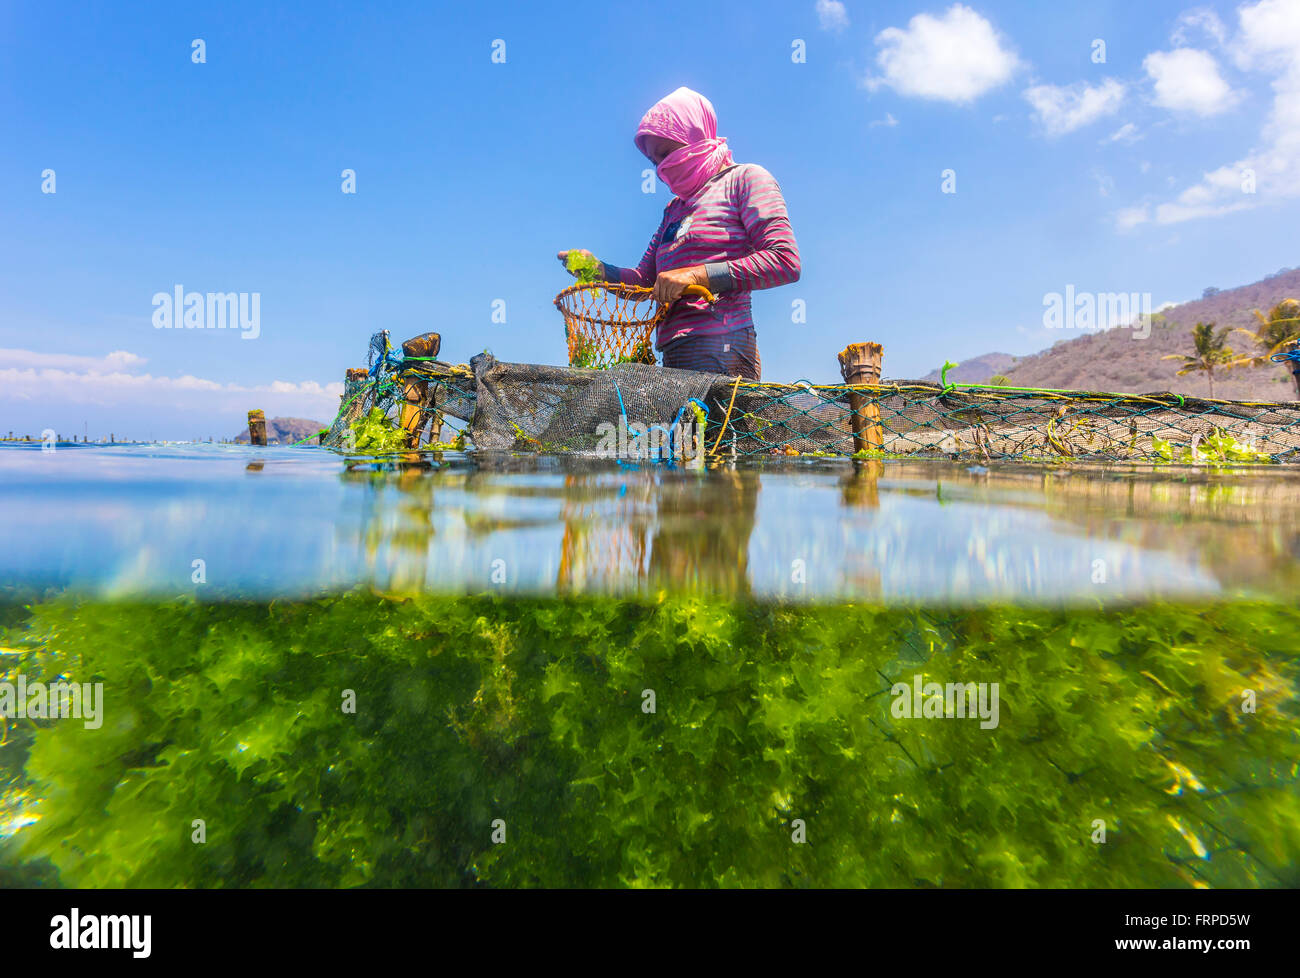 Ferme d'algues. Sumbawa. L'Indonésie. Banque D'Images